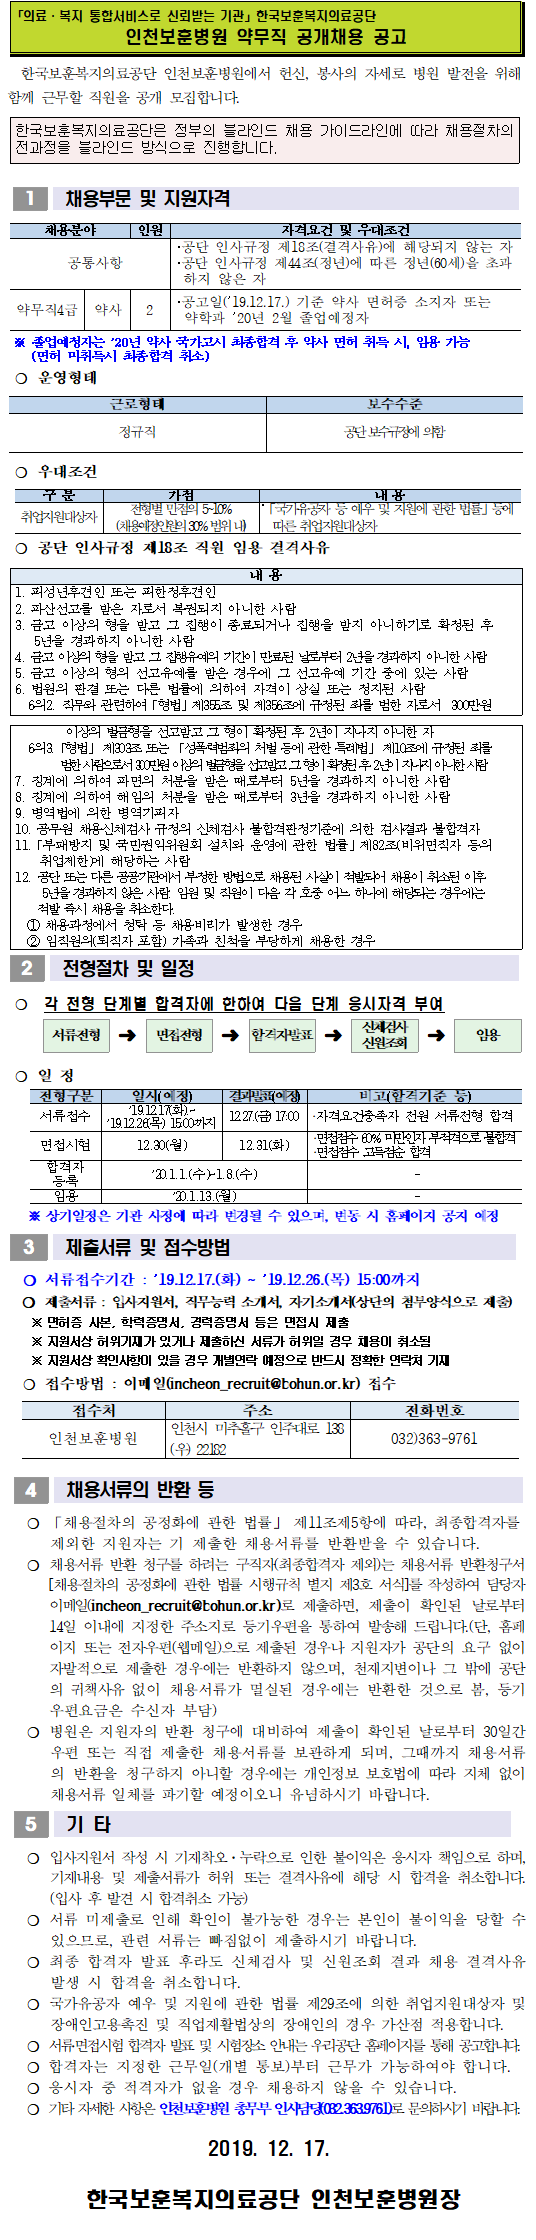 [채용][한국보훈복지의료공단] [인천보훈병원] 약무직 공개채용 공고